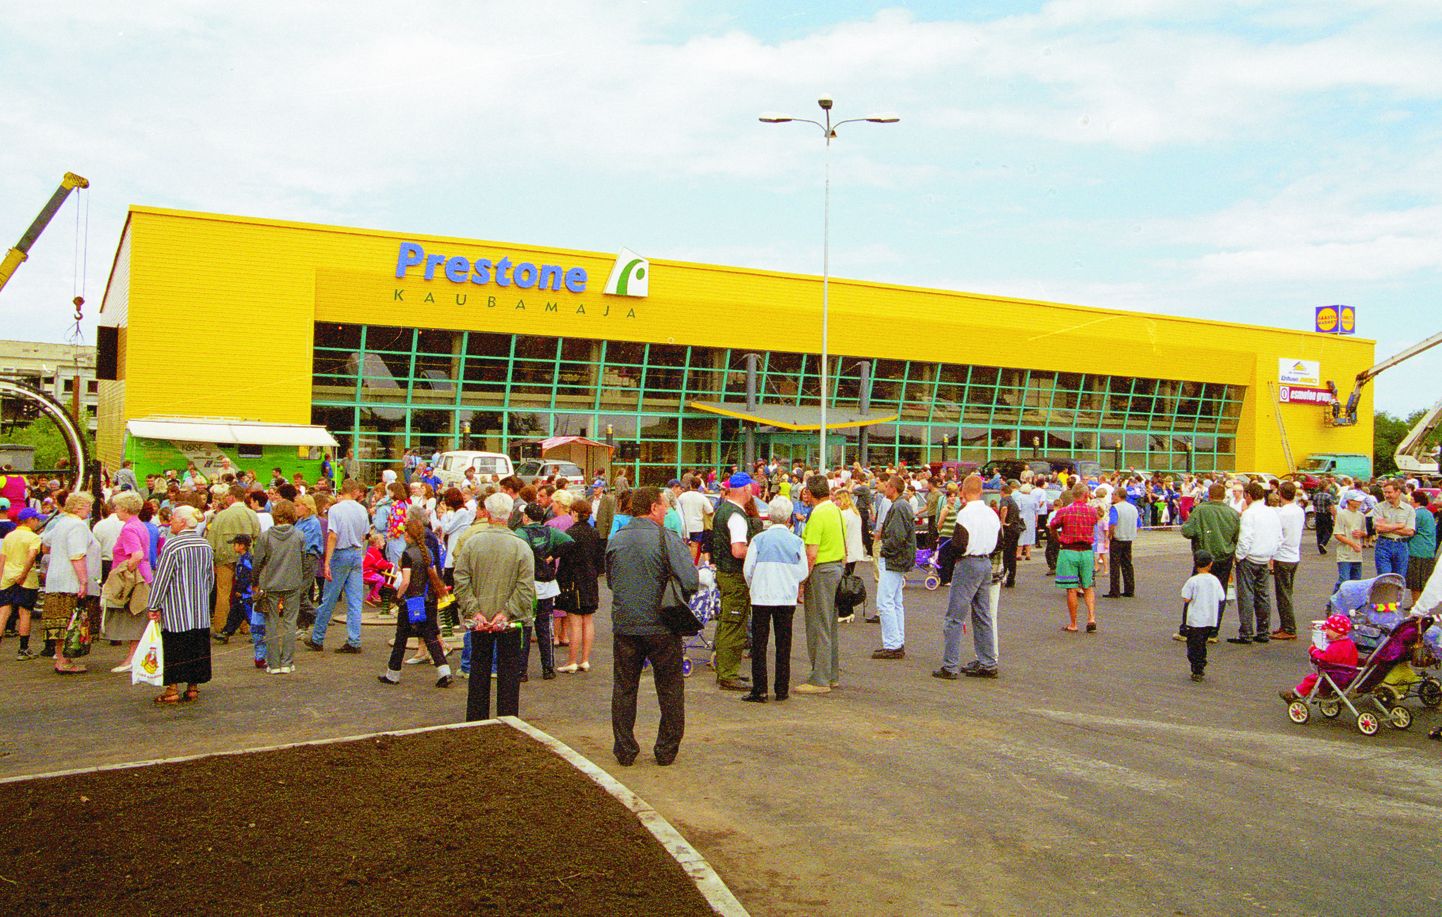 Открытие торгового центра "Prestone" в июле 2000 года было большим событием в городе.